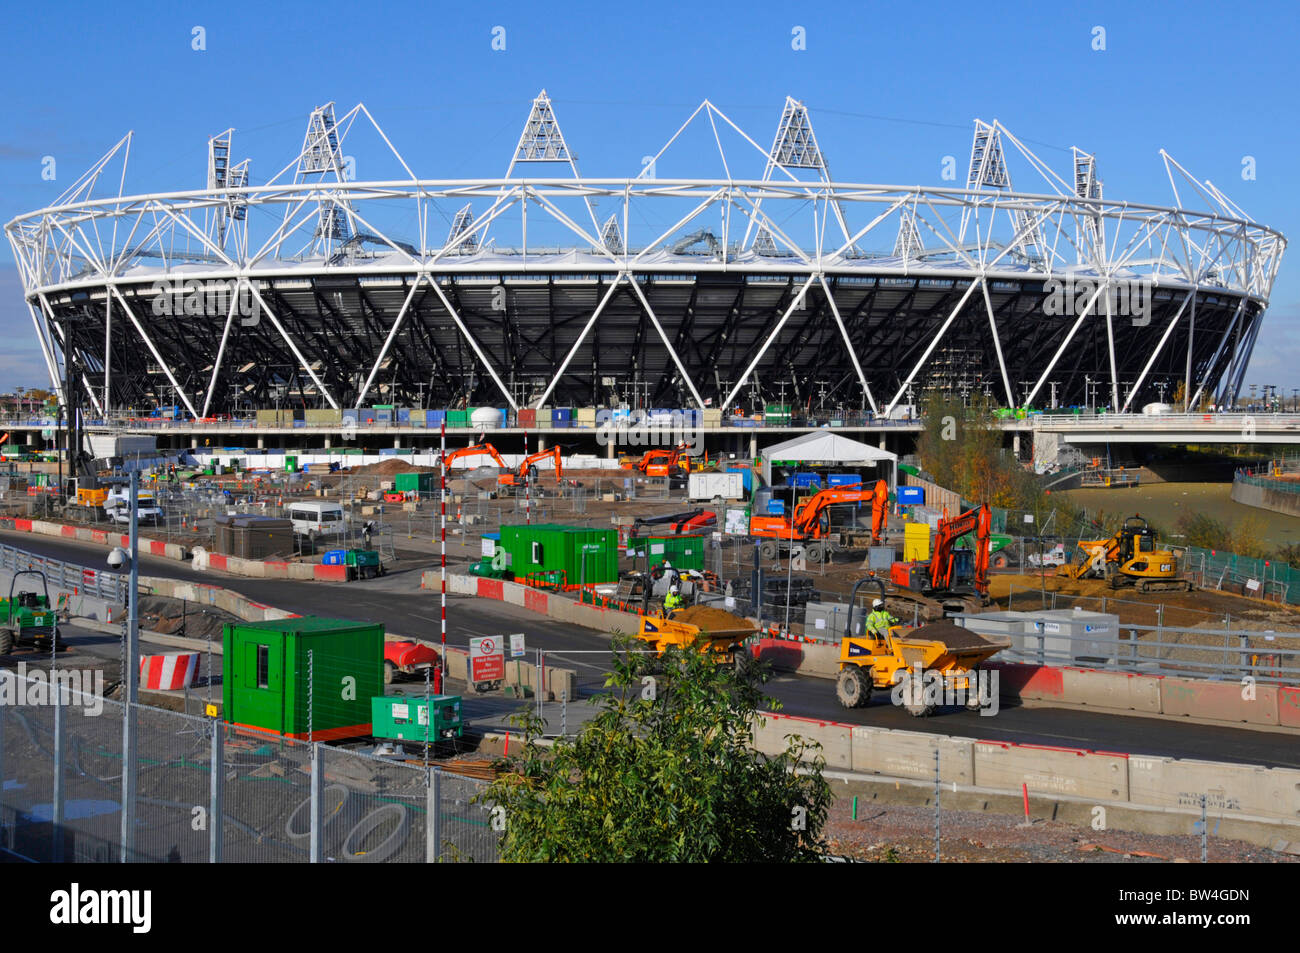 London 2012 Olympische Spiele Sport Stadion Bau Baustelle arbeiten In Arbeit Maschinen & Ausrüstung Stratford Newham East London England VEREINIGTES KÖNIGREICH Stockfoto